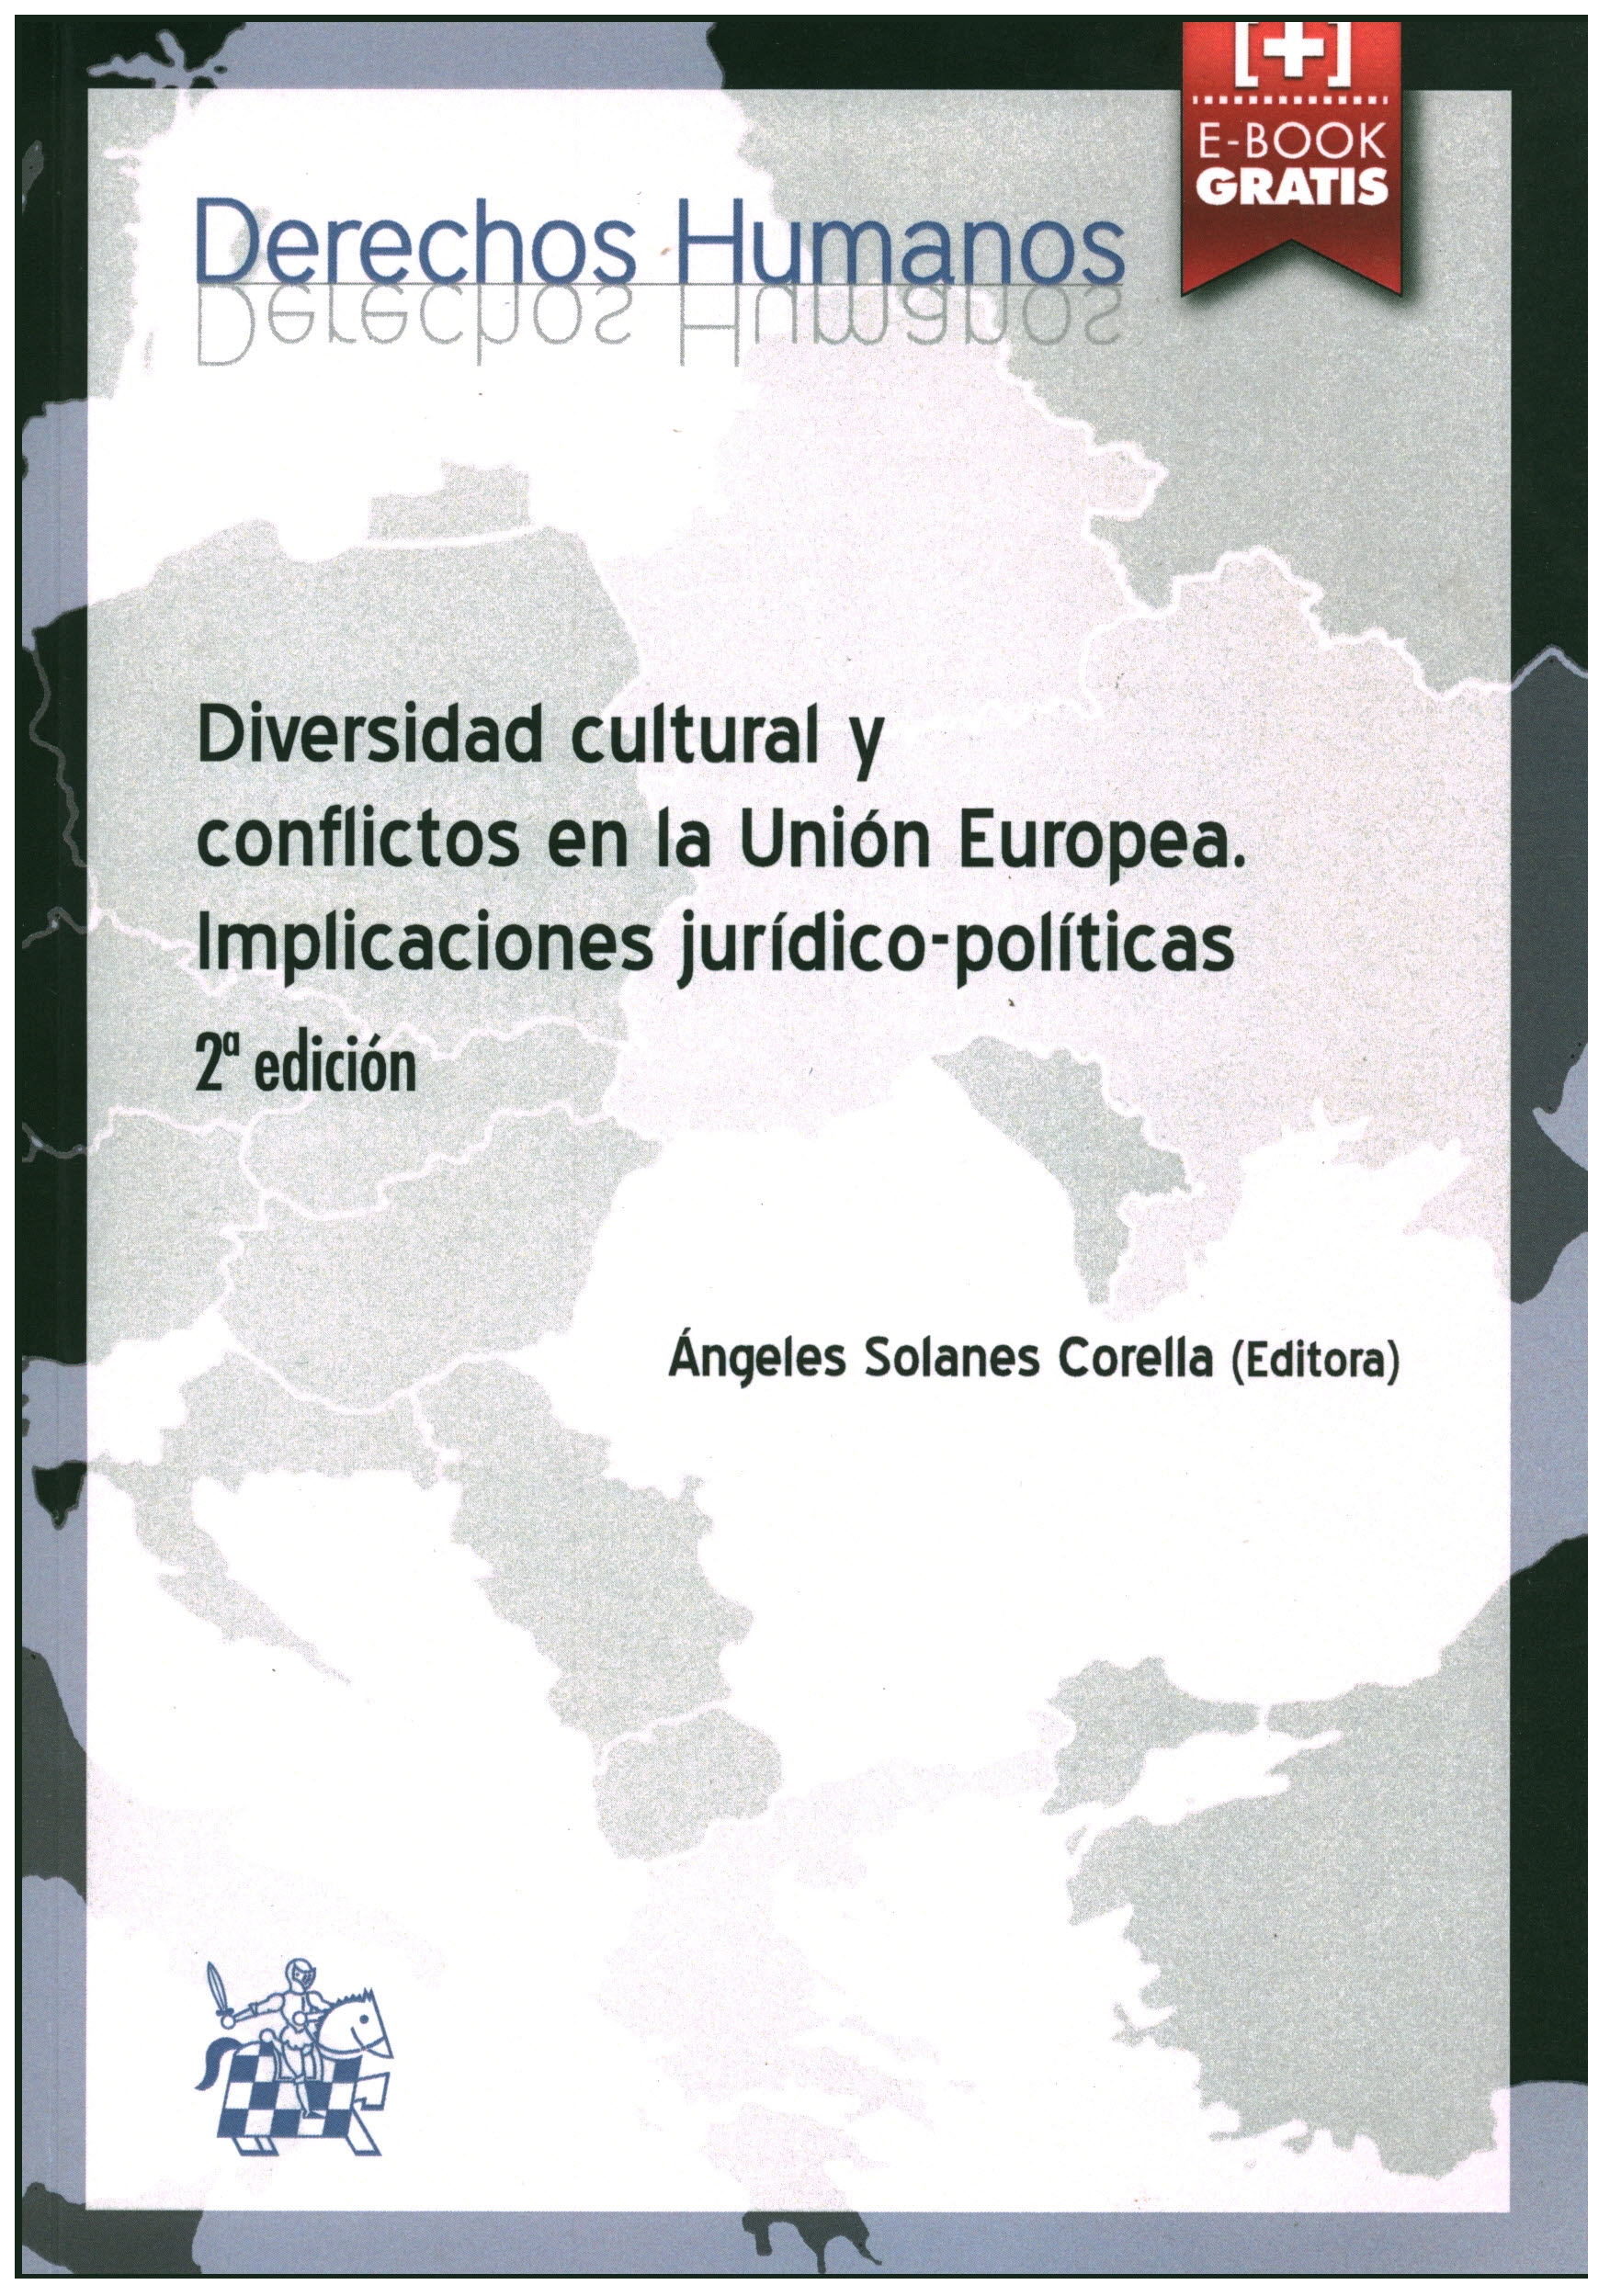 Diversidad cultural y conflictos en la unión europea. Implicaciones jurídico-políticas